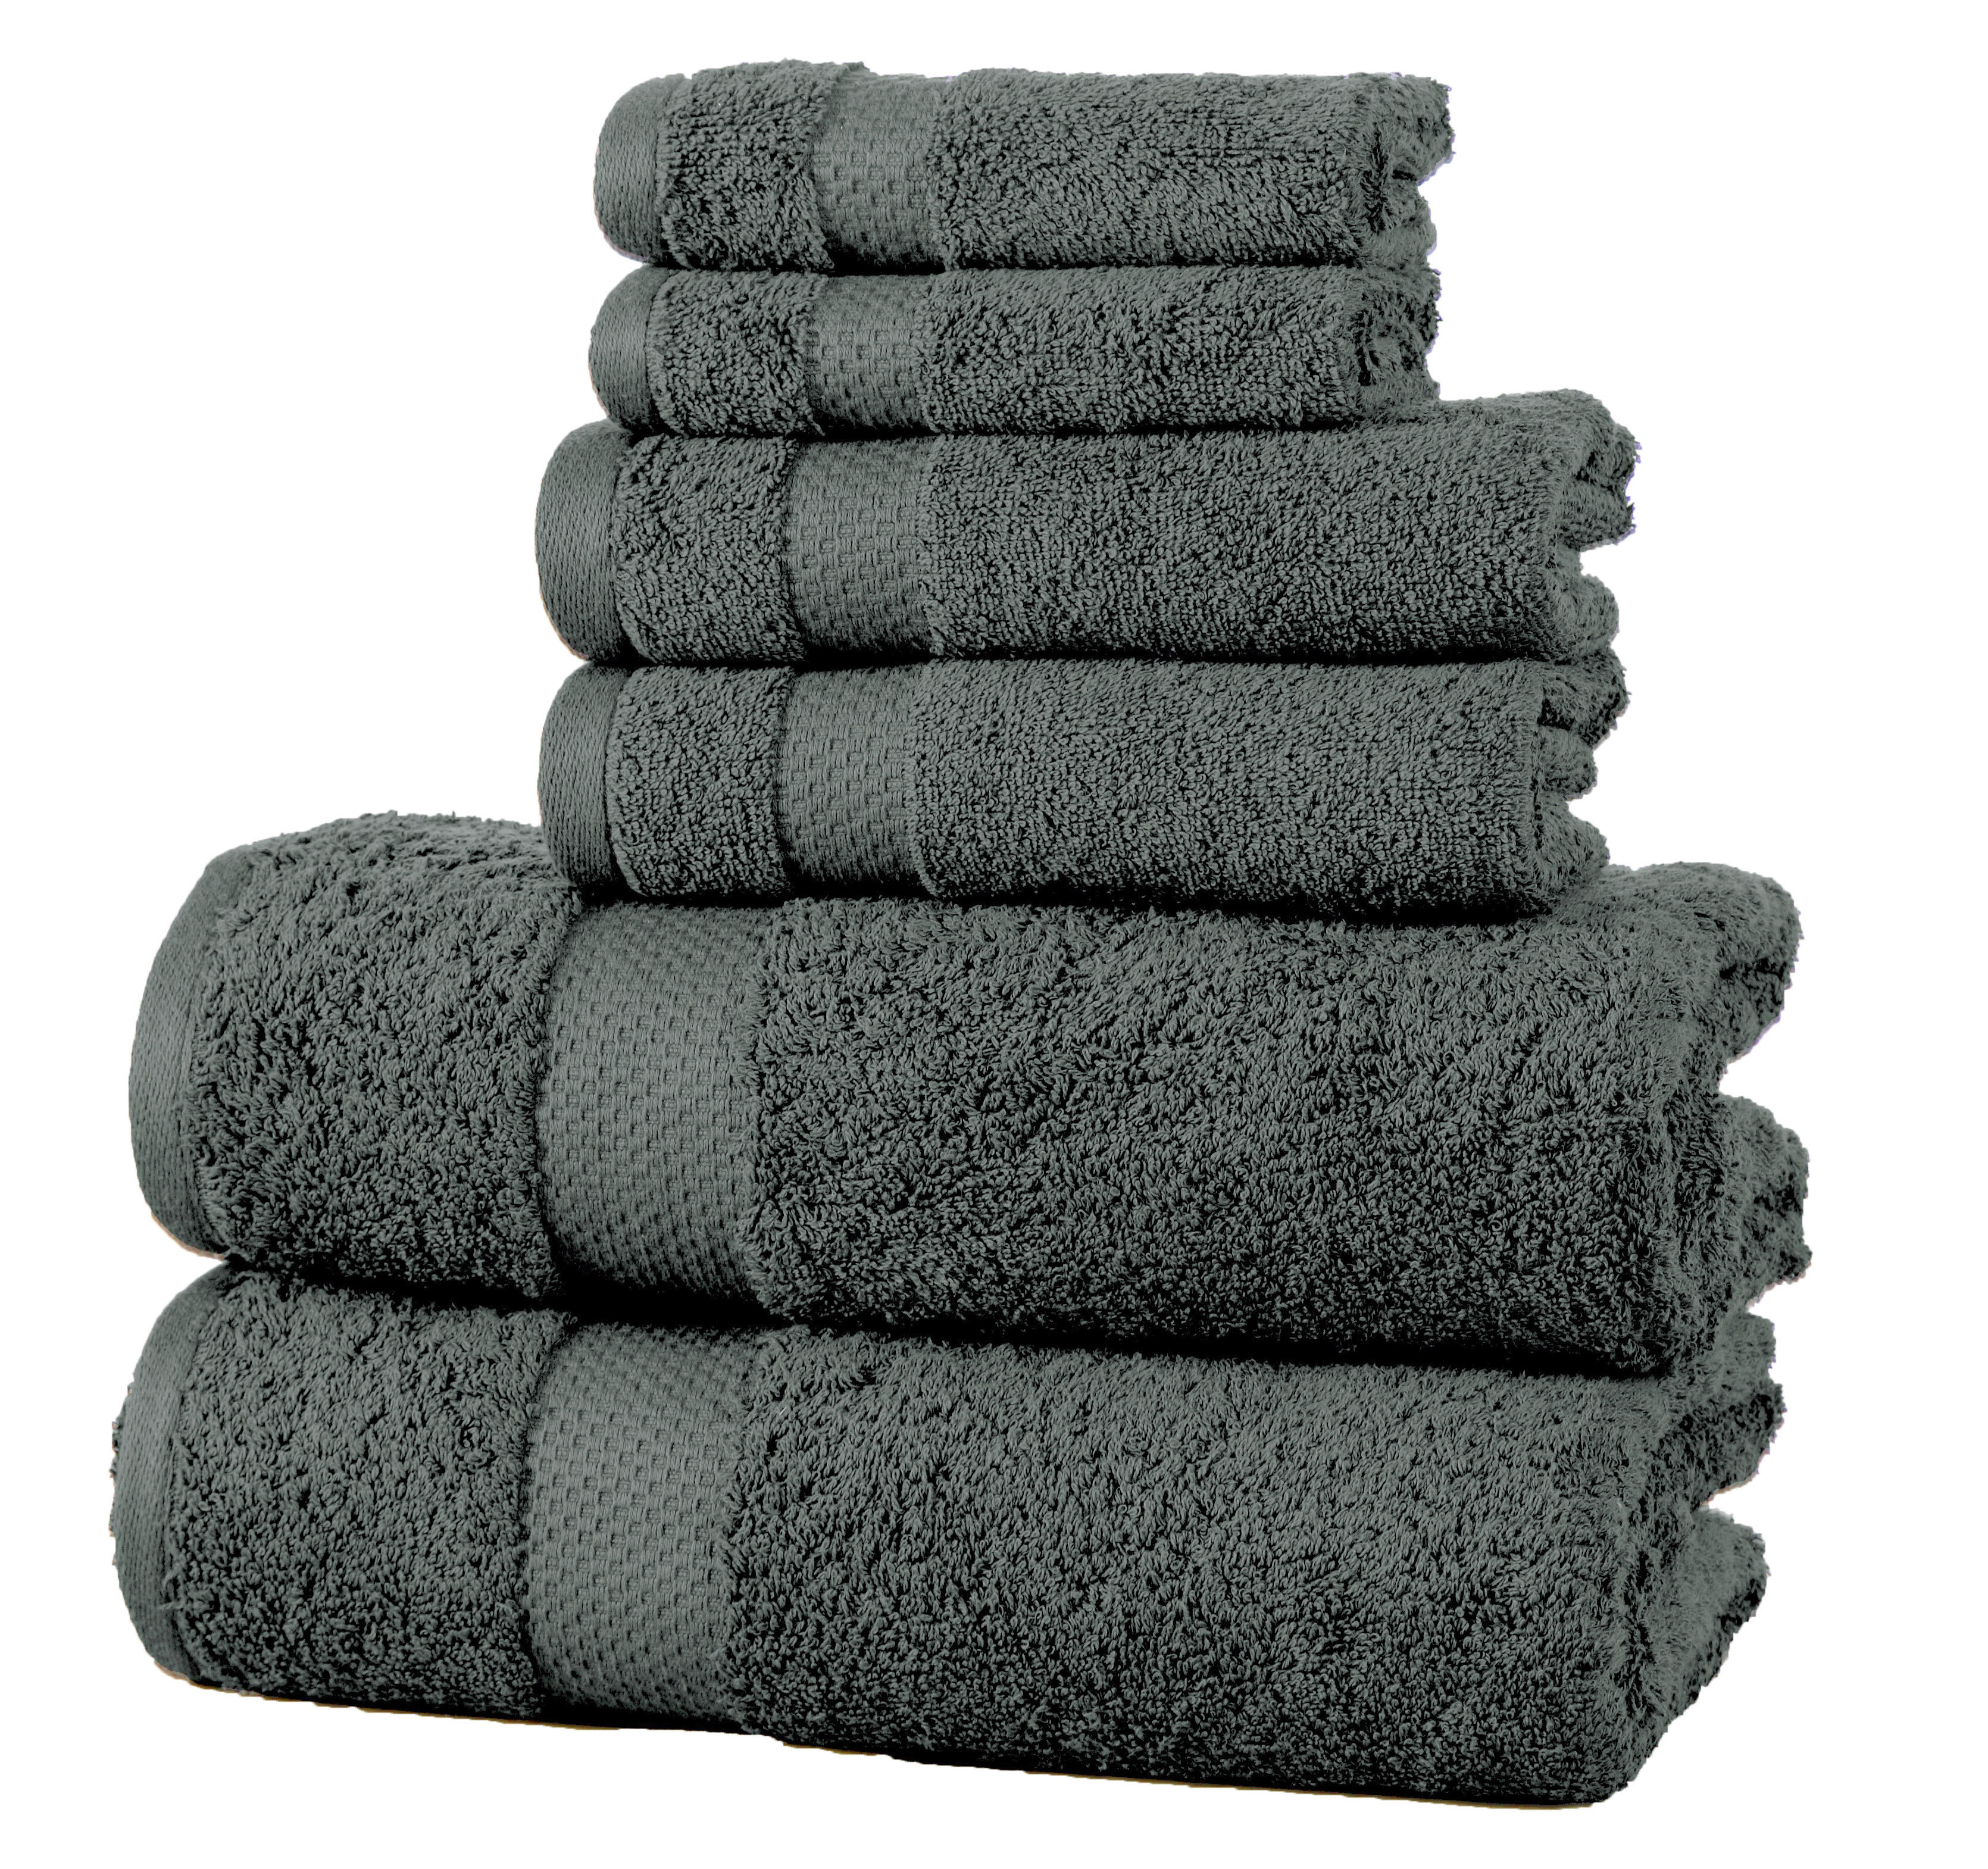 https://assets.wfcdn.com/im/88380379/compr-r85/5966/59665293/aden-100-cotton-bath-towels.jpg